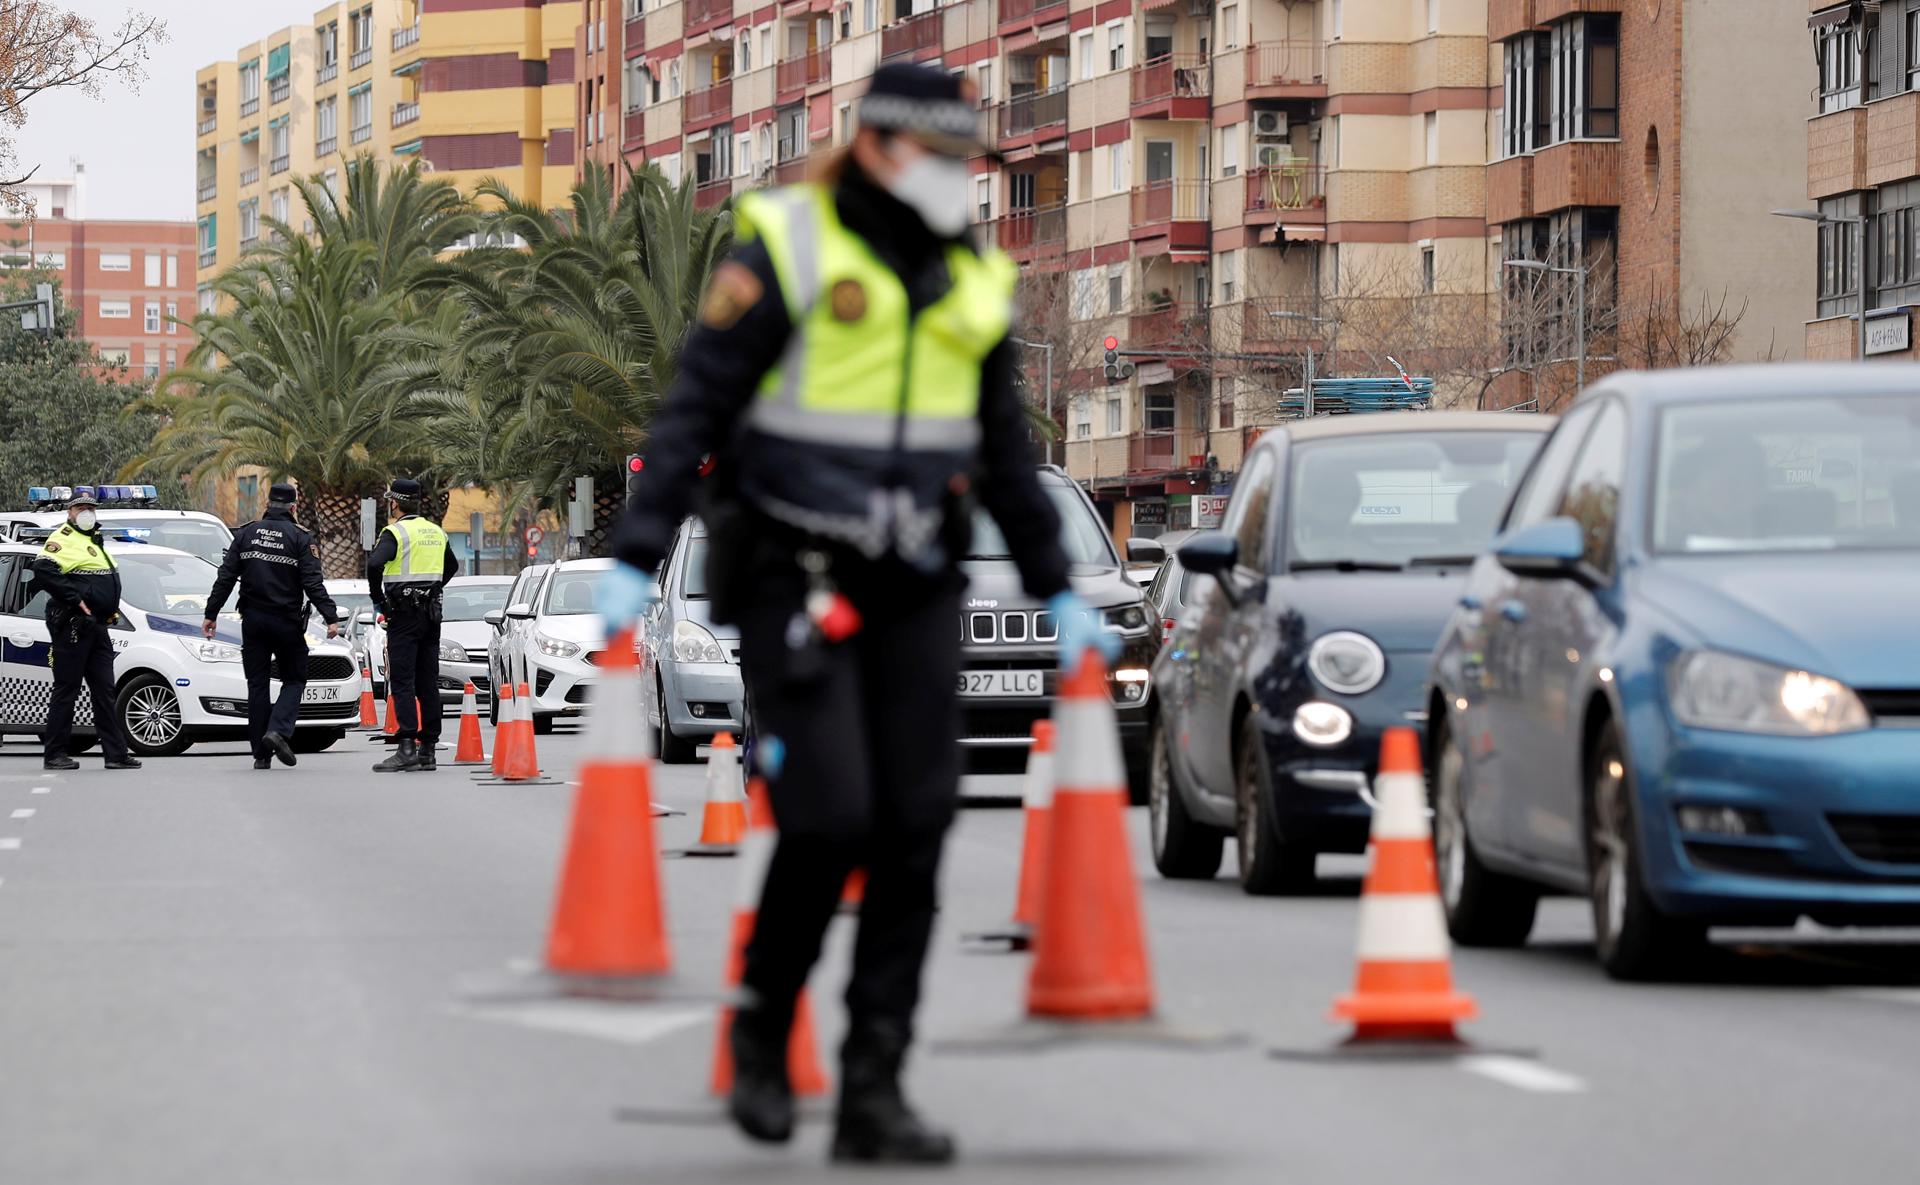 Agentes de la Policia Local realizan un control de tráfico. EFE/Manuel Bruque/Archivo